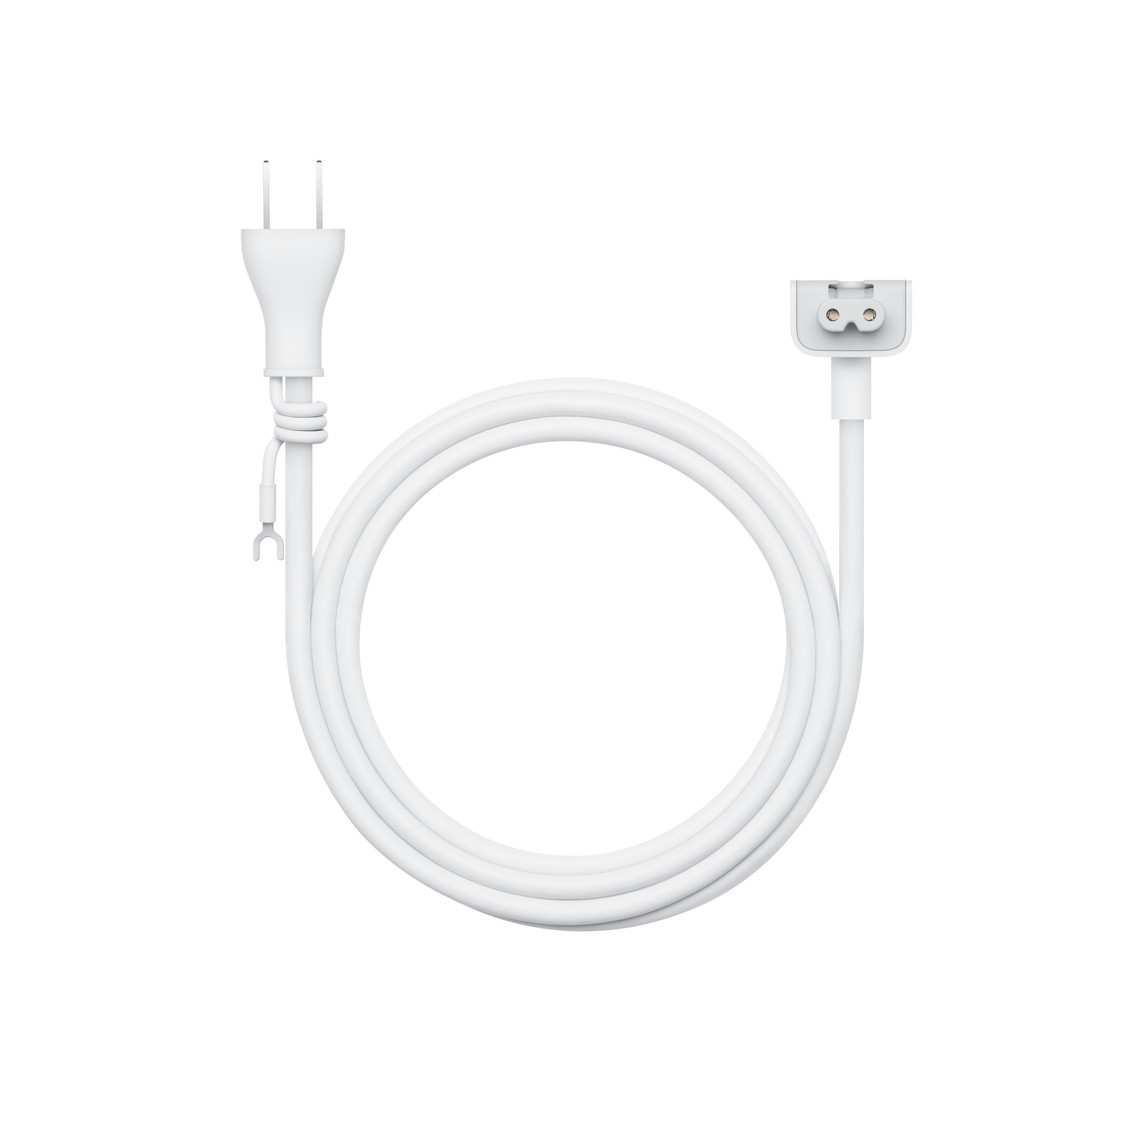 1.8メートルの電源アダプタ延長ケーブルは、Apple製の電源アダプタにつないで使えるAC延長コード。